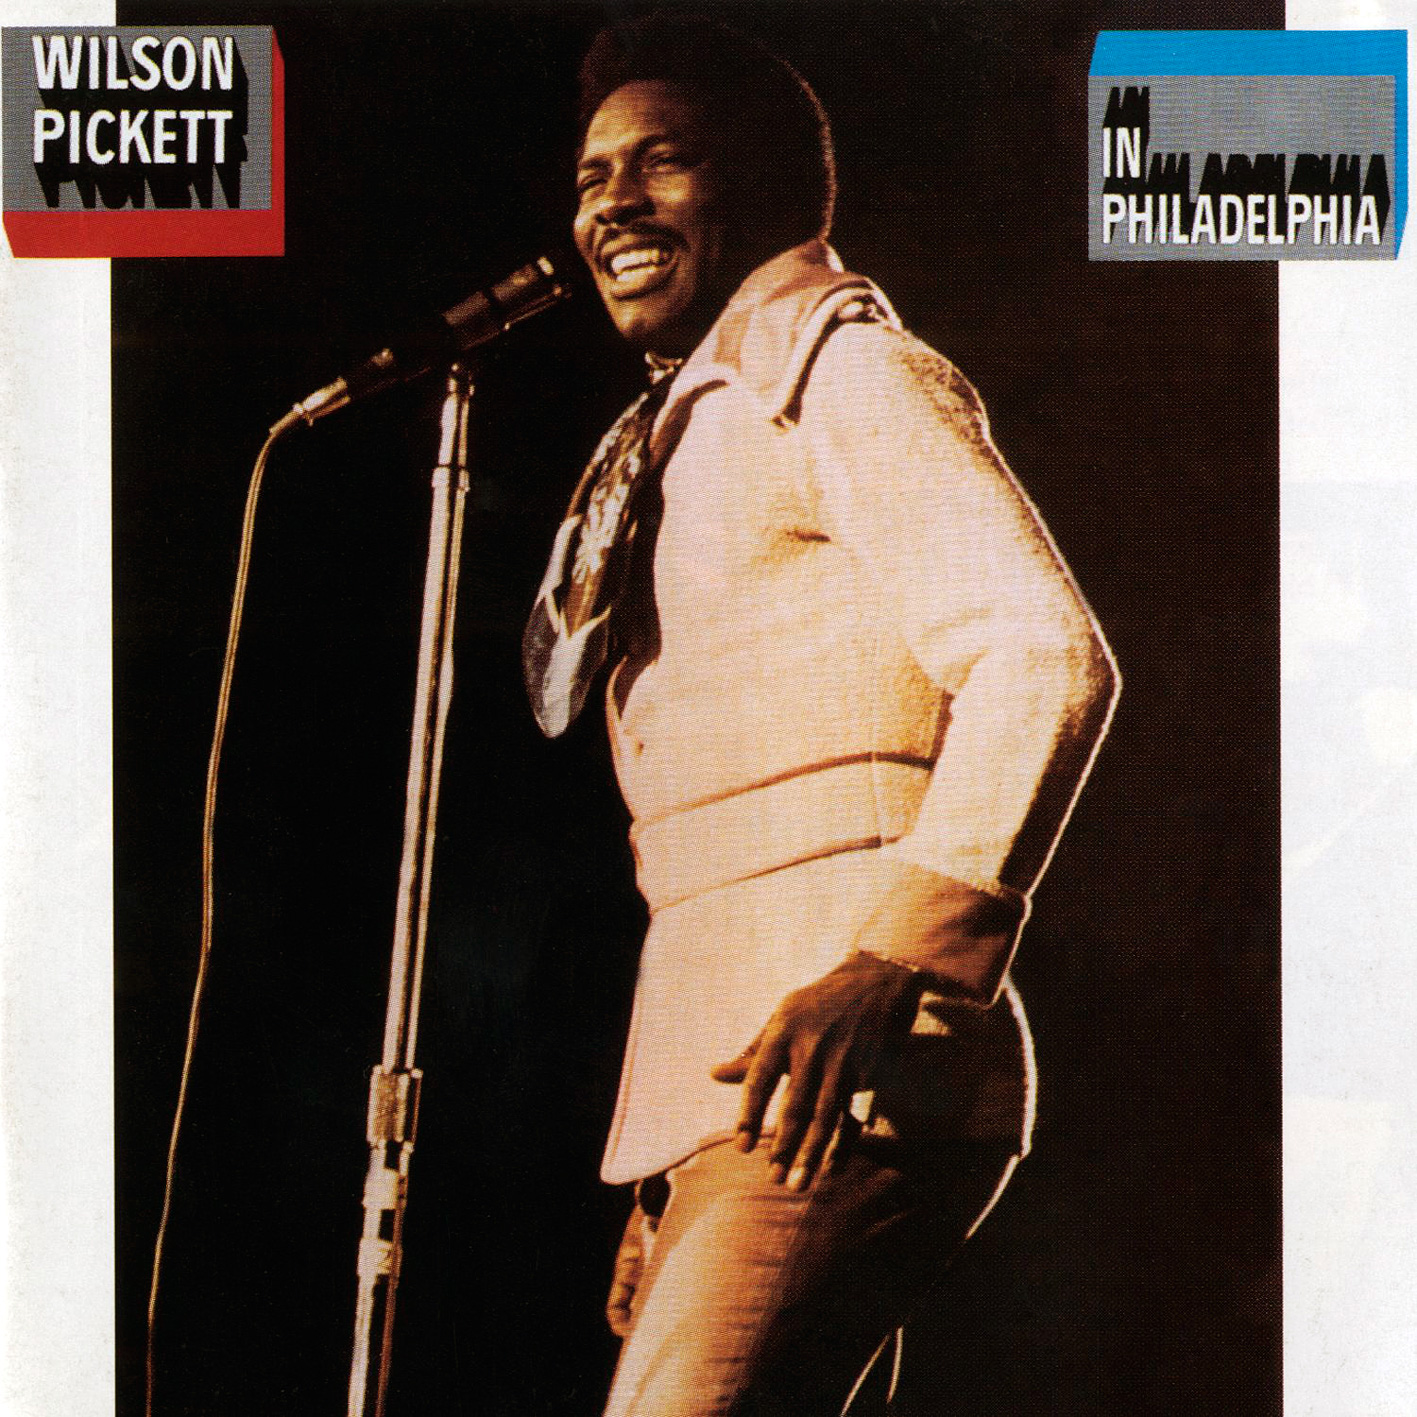 Wilson Pickett – In Philadelphia (1970/2012) [HDTracks FLAC 24bit/96 kHz]